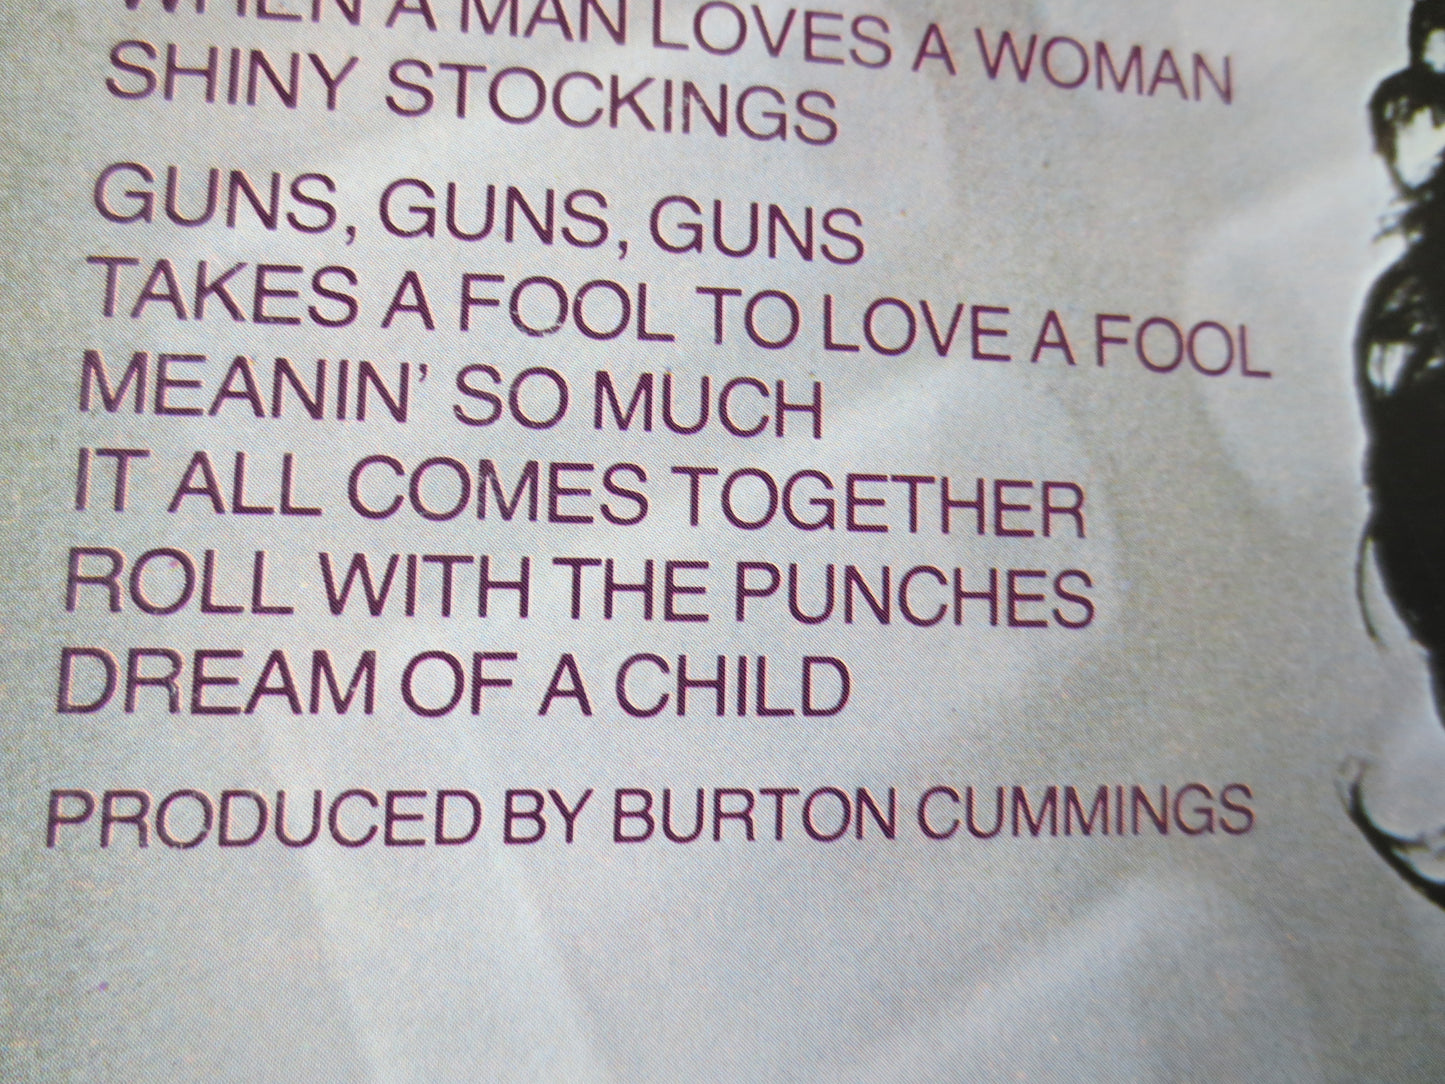 BURTON CUMMINGS, DREAM of a Child, Rock Record, Pop Record, Vintage Vinyl, Record, Vinyl Record, Vinyl Album, 1978 Records